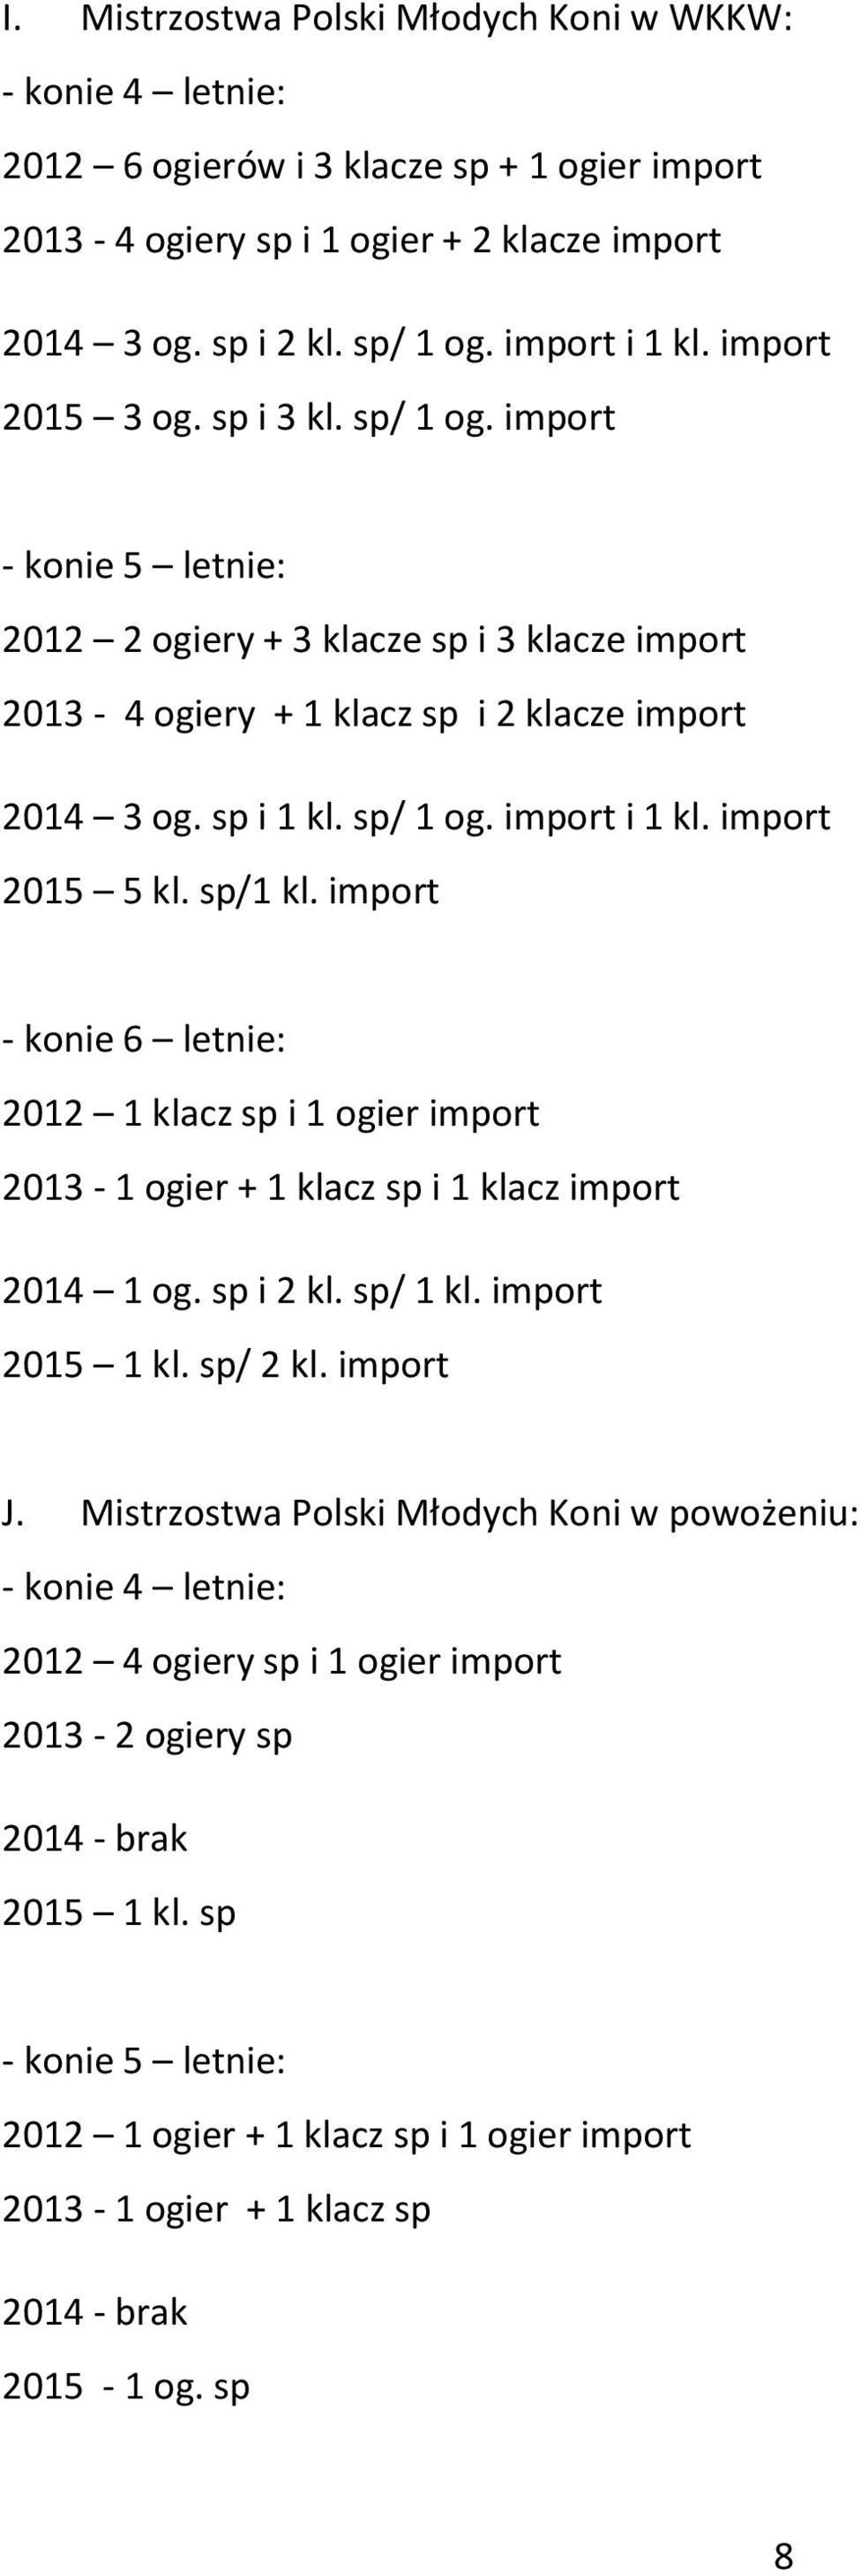 import 2015 5 kl. sp/1 kl. import - konie 6 letnie: 2012 1 klacz sp i 1 ogier import 2013-1 ogier + 1 klacz sp i 1 klacz import 2014 1 og. sp i 2 kl. sp/ 1 kl. import 2015 1 kl. sp/ 2 kl. import J.